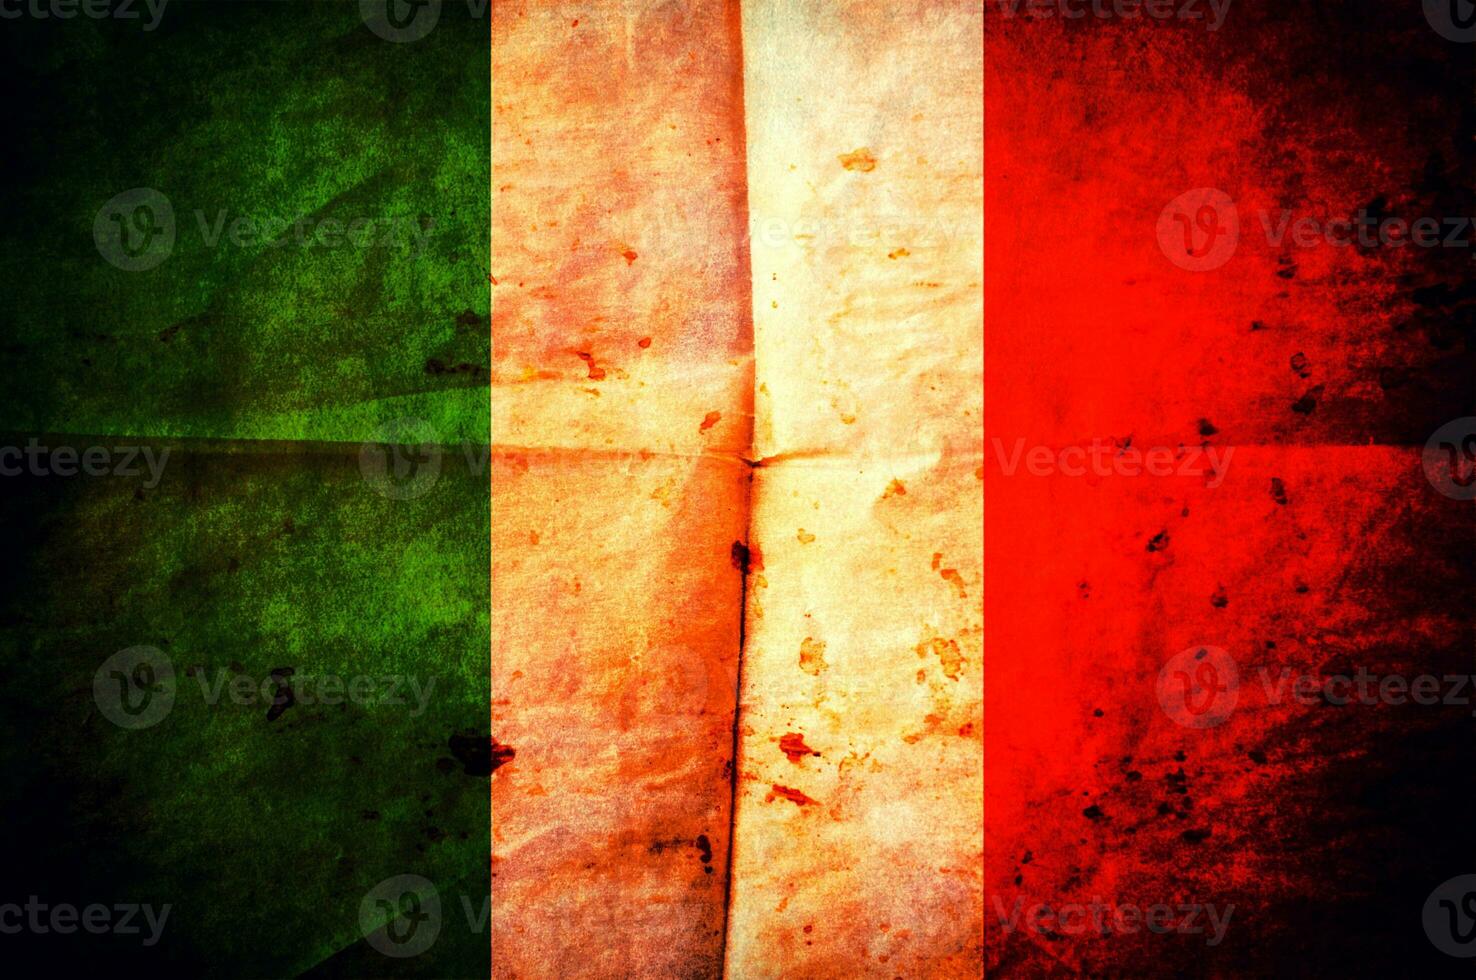 italiano bandera antecedentes foto